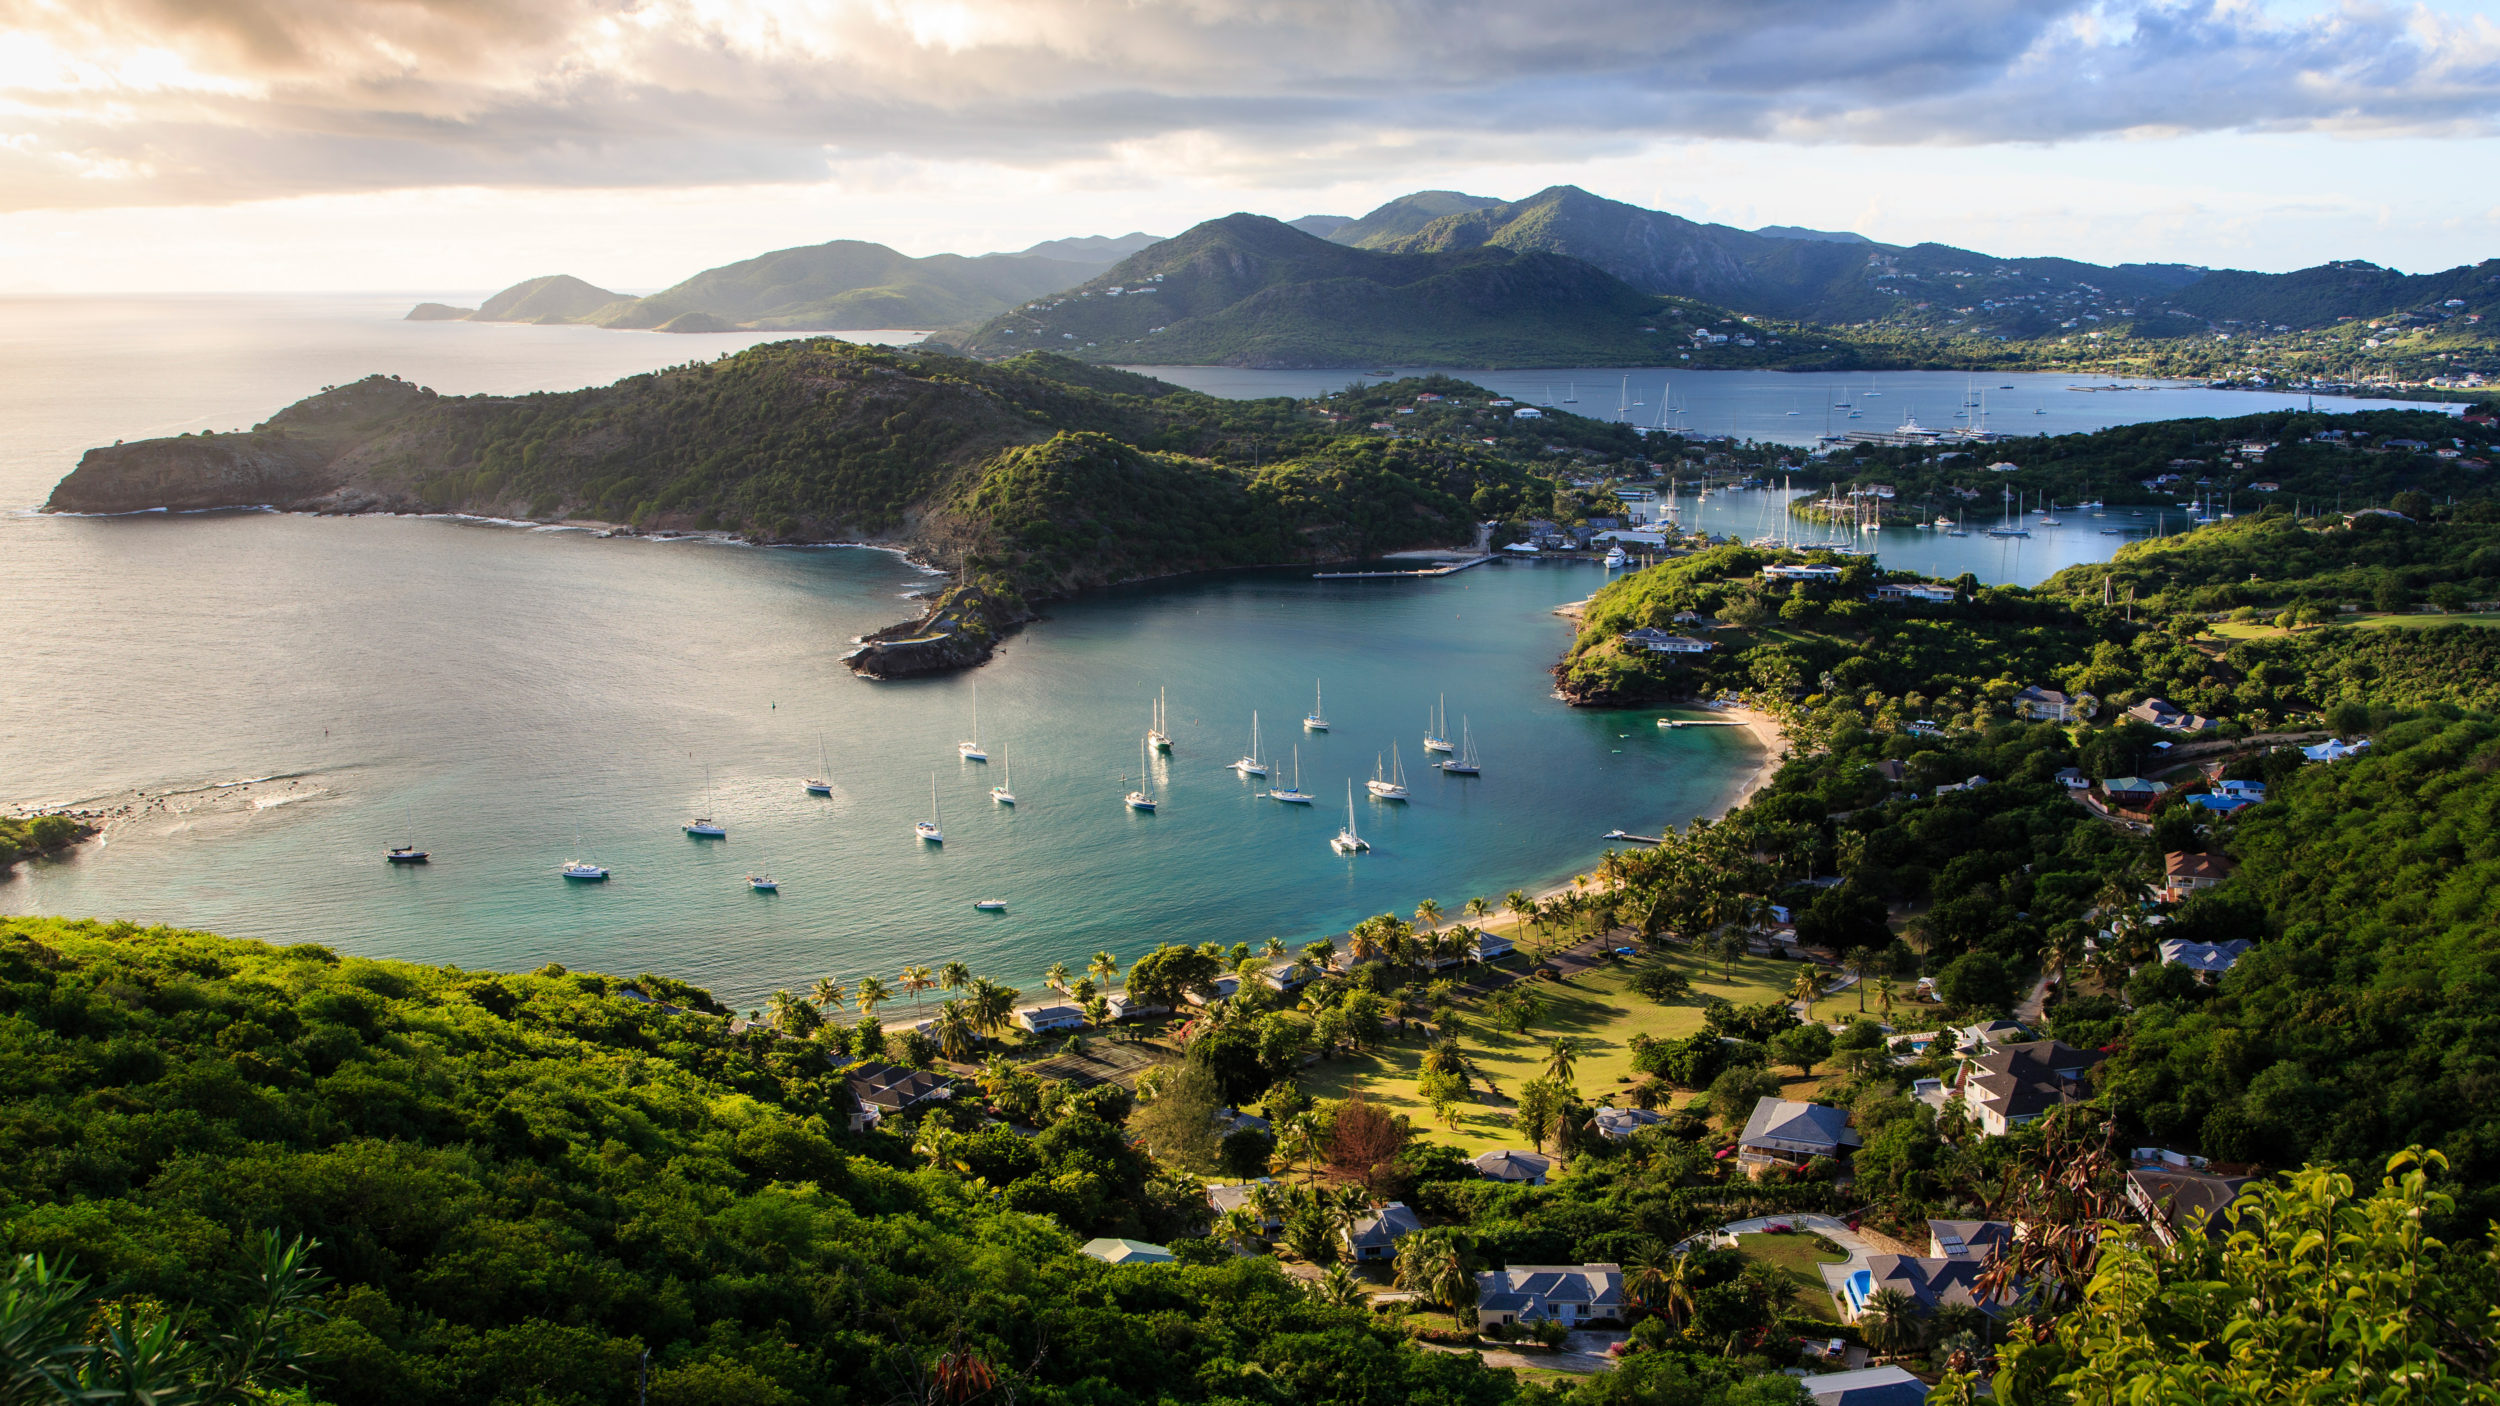 Antigua and Barbuda [Shutterstock]